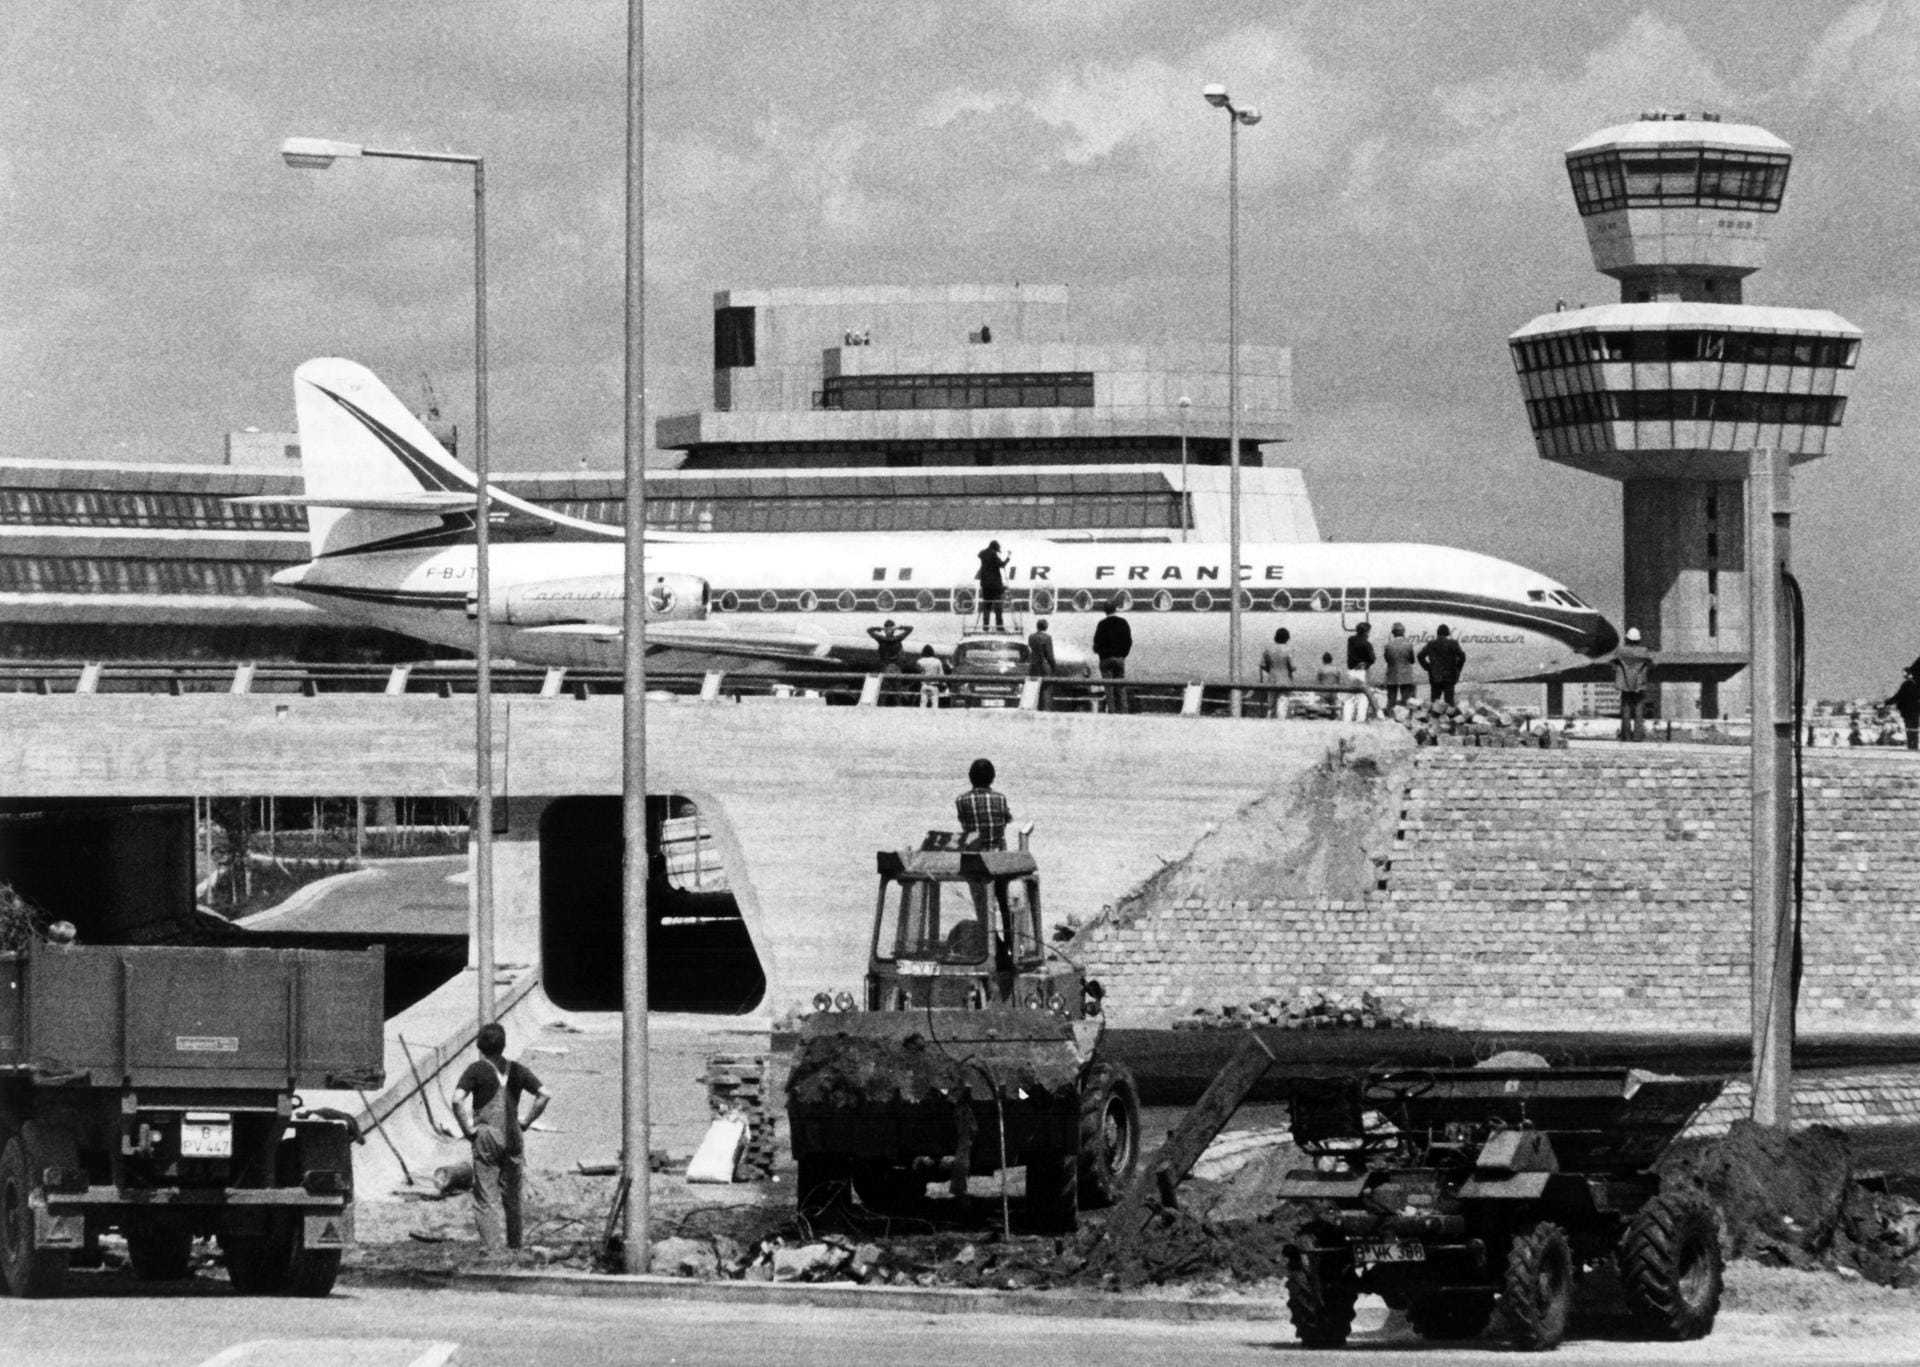 10. Juni 1974: Noch vor der offiziellen Einweihung im Oktober rollt eine vollbesetzte Maschine der Fluggesellschaft Air France am neuen noch nicht ganz fertiggestellten Terminal-Gebäude und Tower vorbei. Die letzte Maschine, die von Tegel abhebt, wird ebenfalls ein Flugzeug von Air France sein.